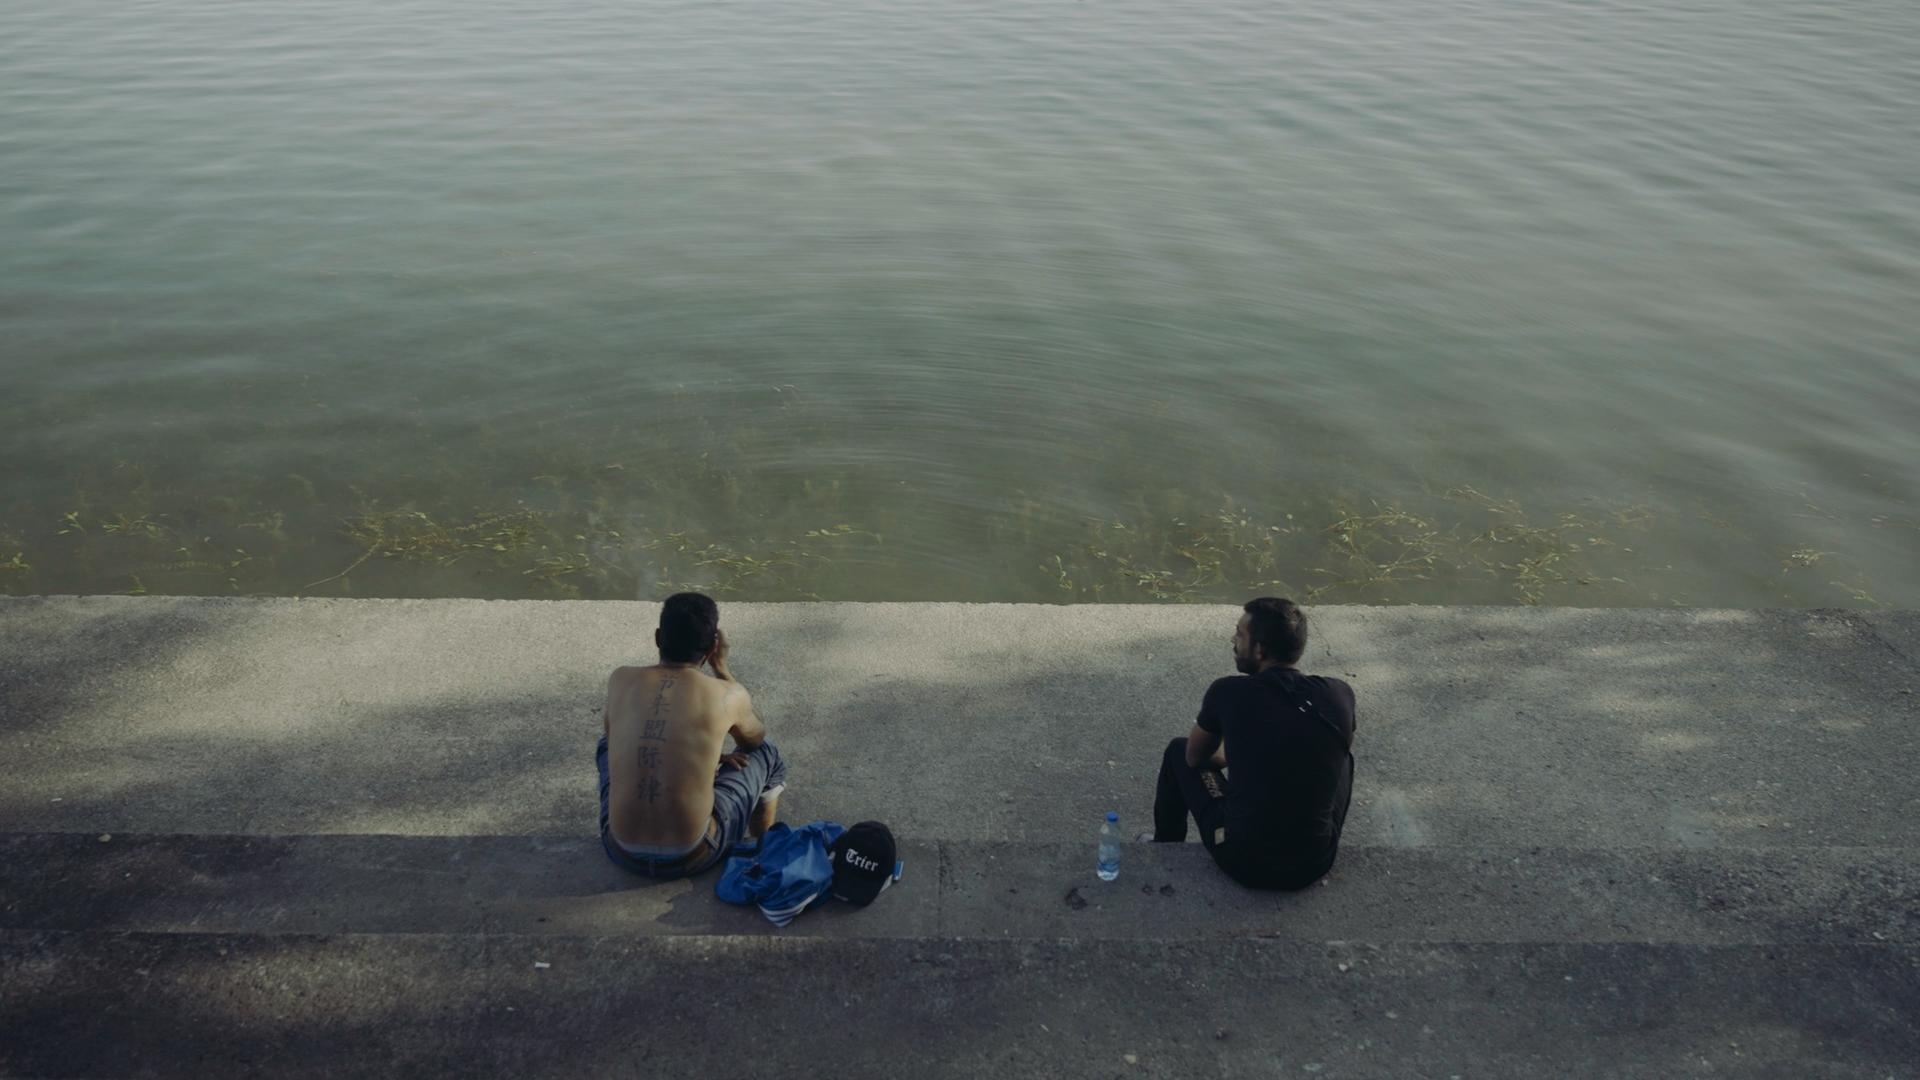 Zwei Männer sitzen auf einer Stufe am Wasser.